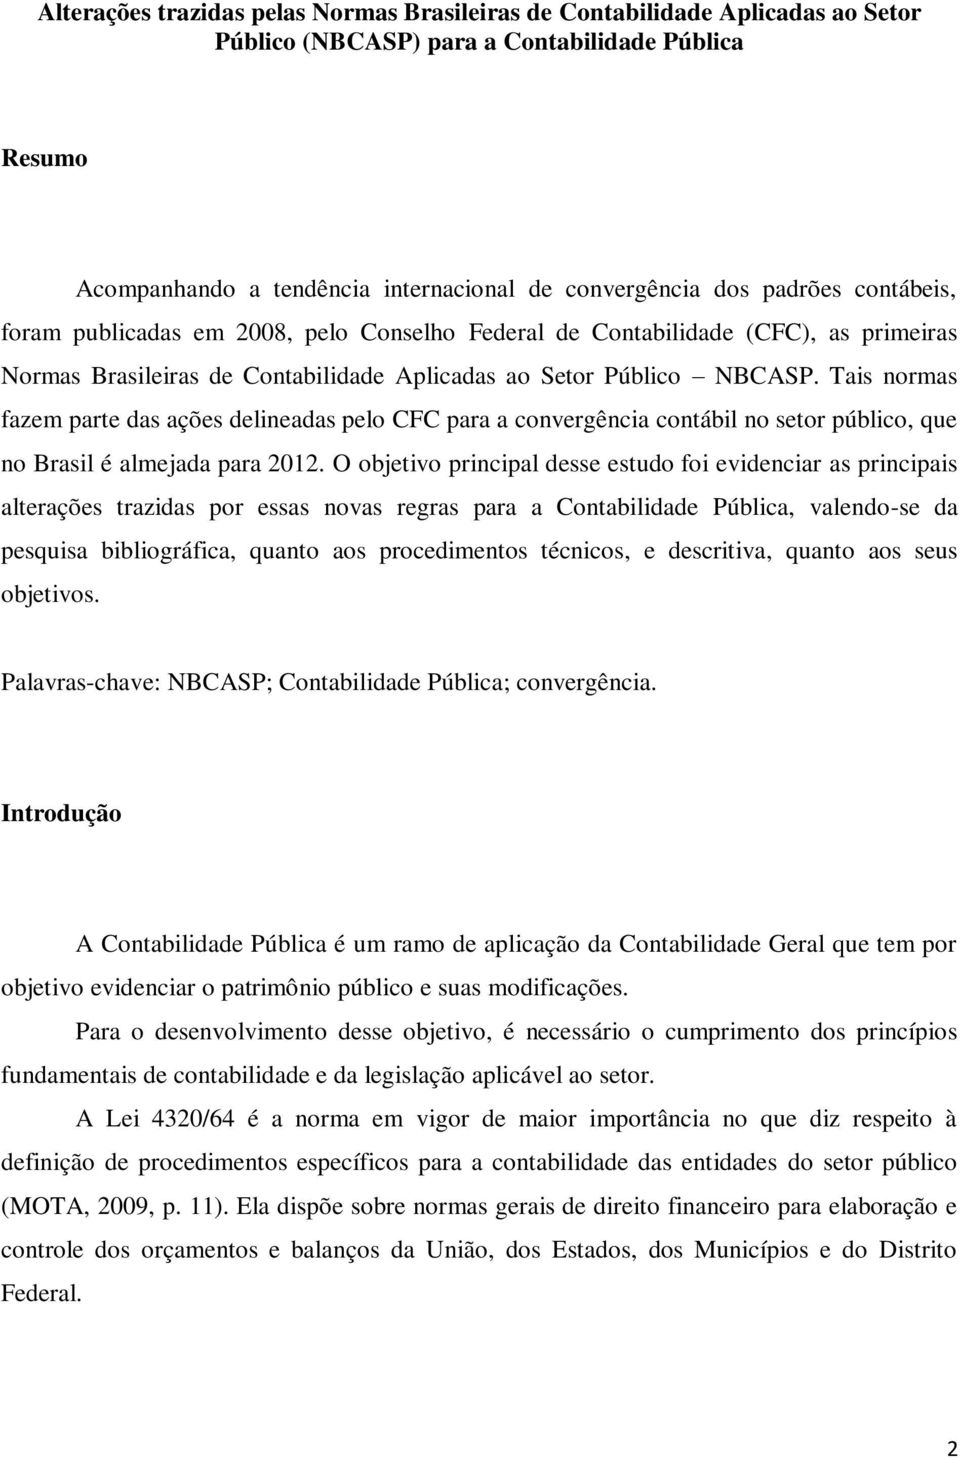 Tais normas fazem parte das ações delineadas pelo CFC para a convergência contábil no setor público, que no Brasil é almejada para 2012.